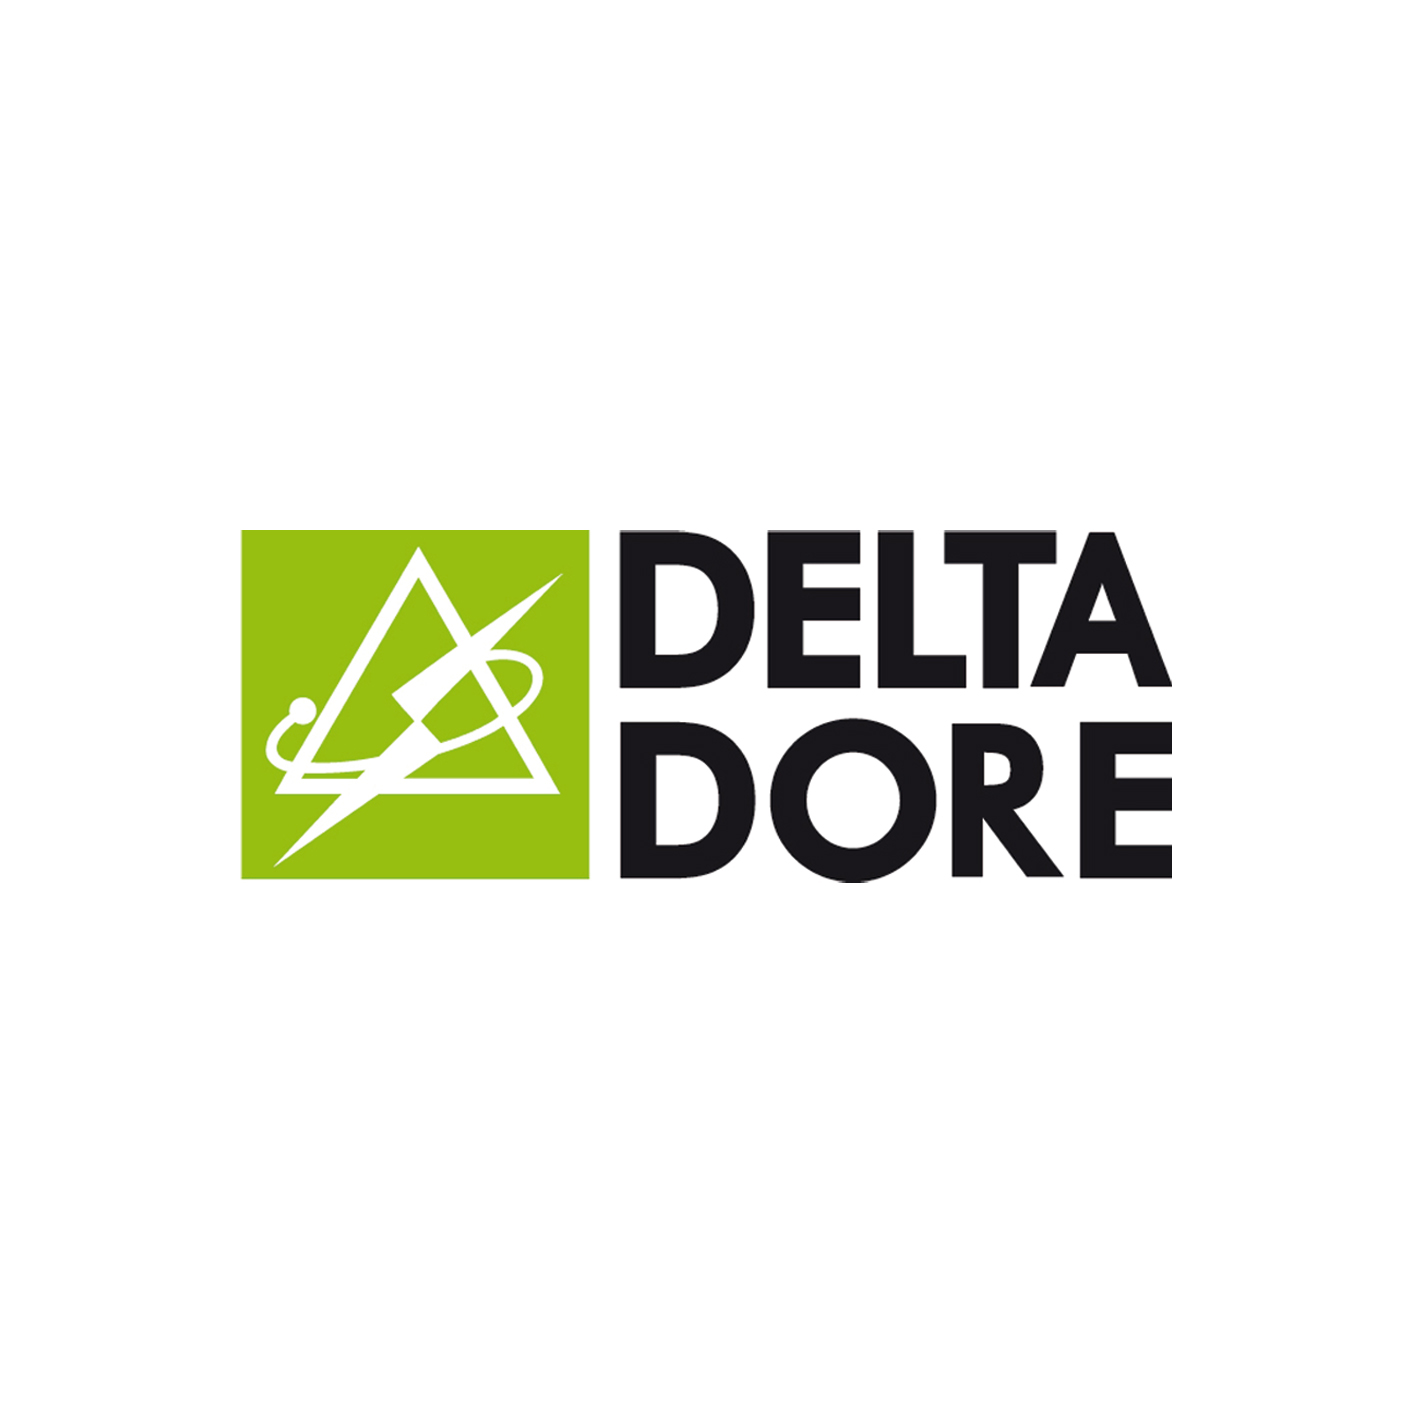 Delta dore - efiteks - Sistemas de Control Remonto